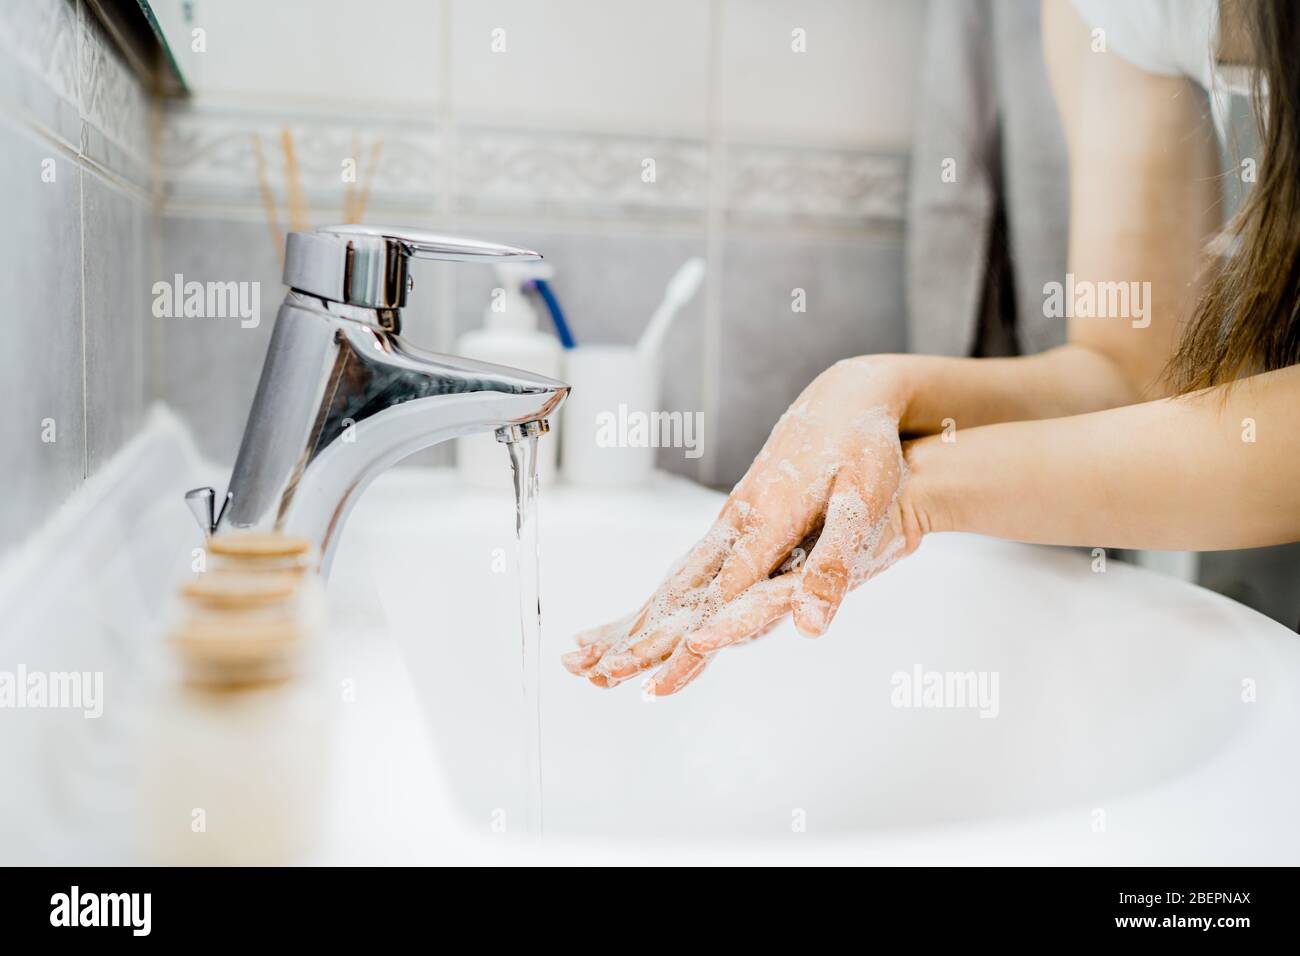 Procedura antisettica di lavaggio delle mani con sapone e acqua in bagno.decontaminazione fasi di igiene delle mani routine.pulizia mani, palme, interlacciato dito Foto Stock